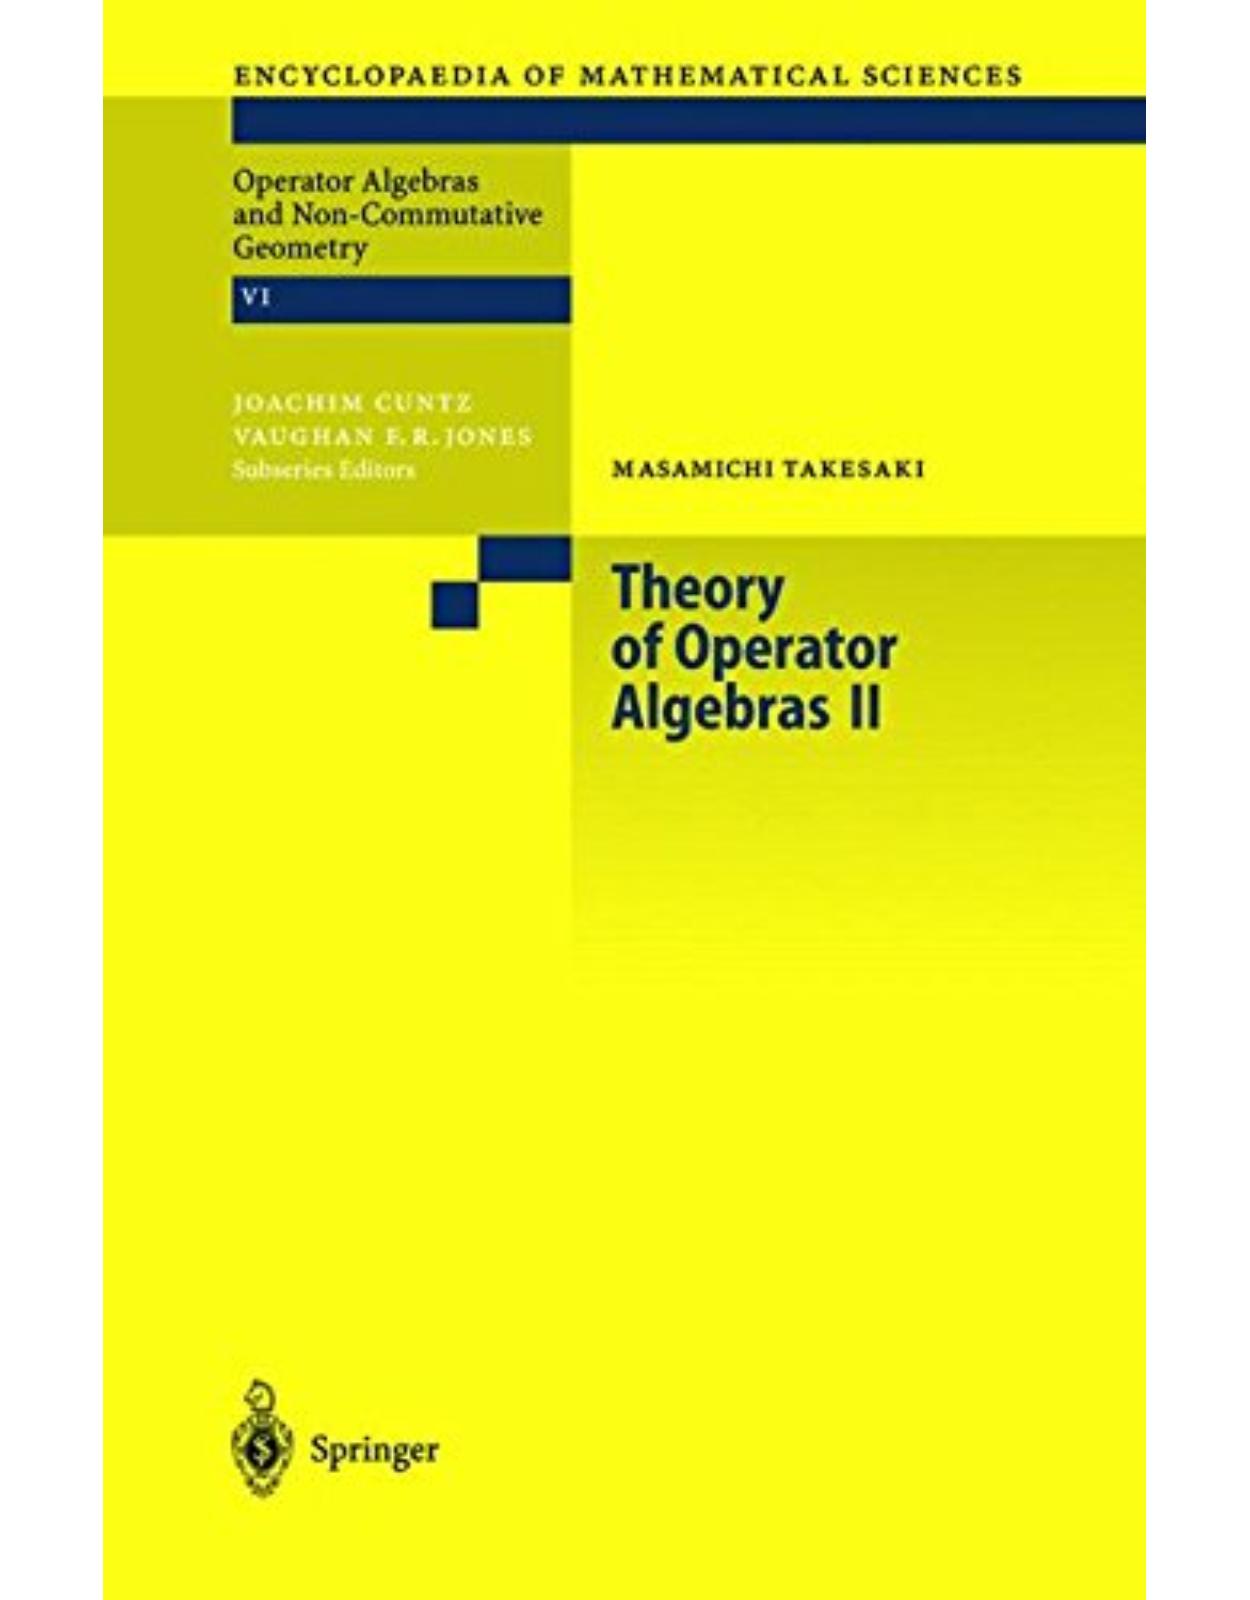  Theory of Operator Algebras II